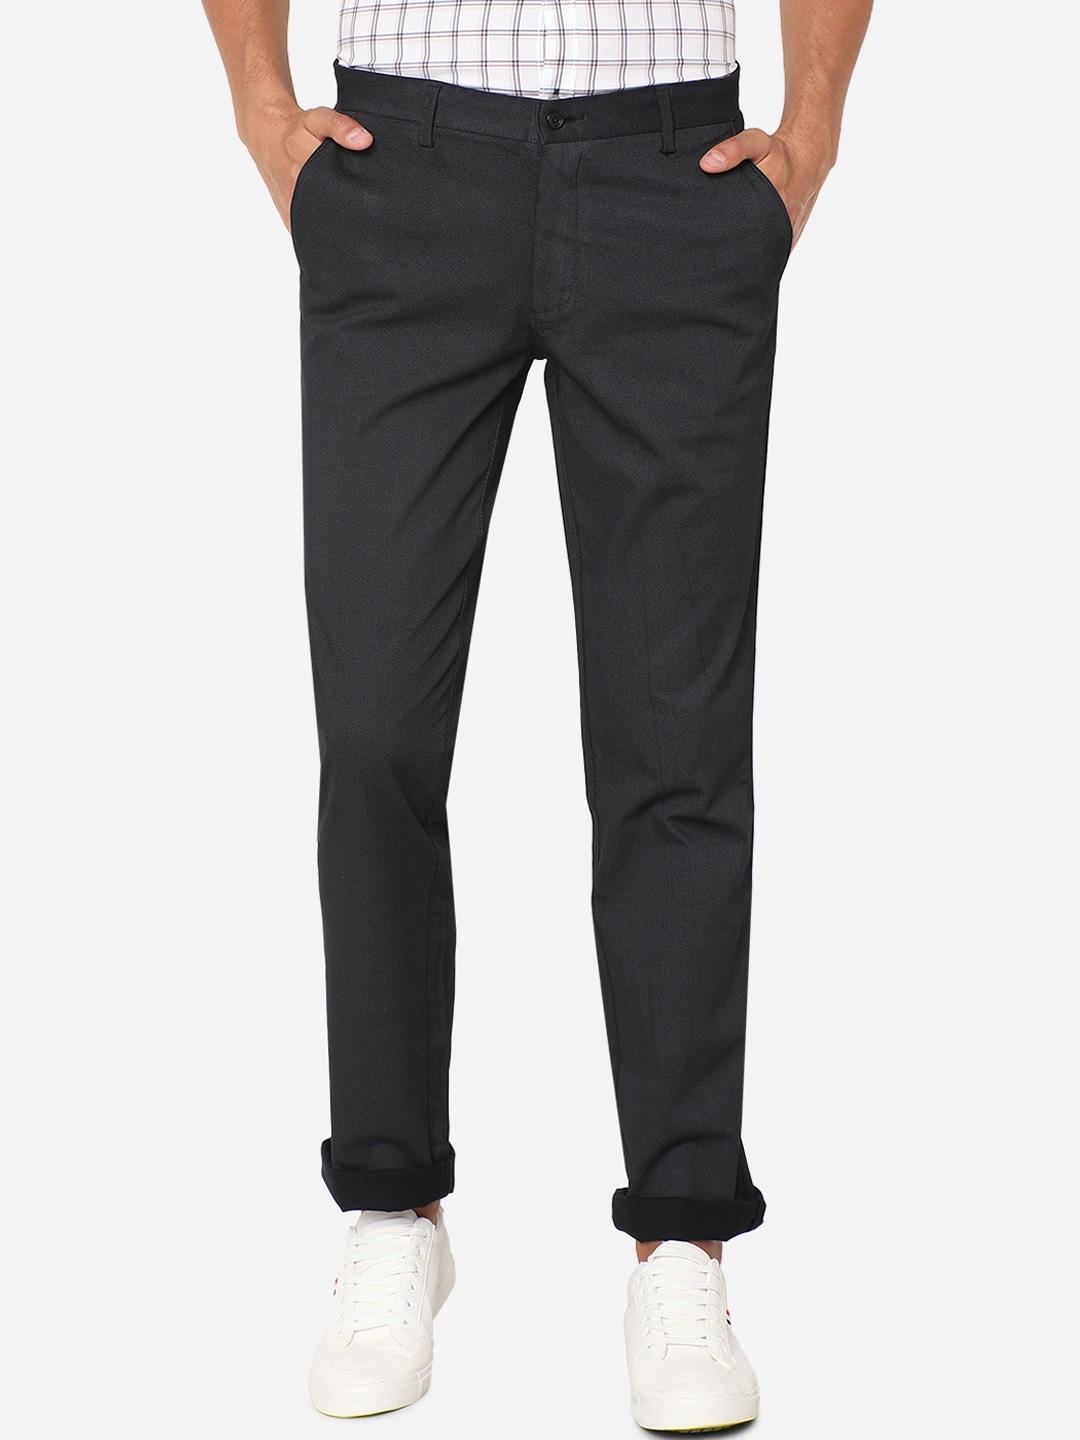 greenfibre-men-black-solid-slim-fit-regular-trousers